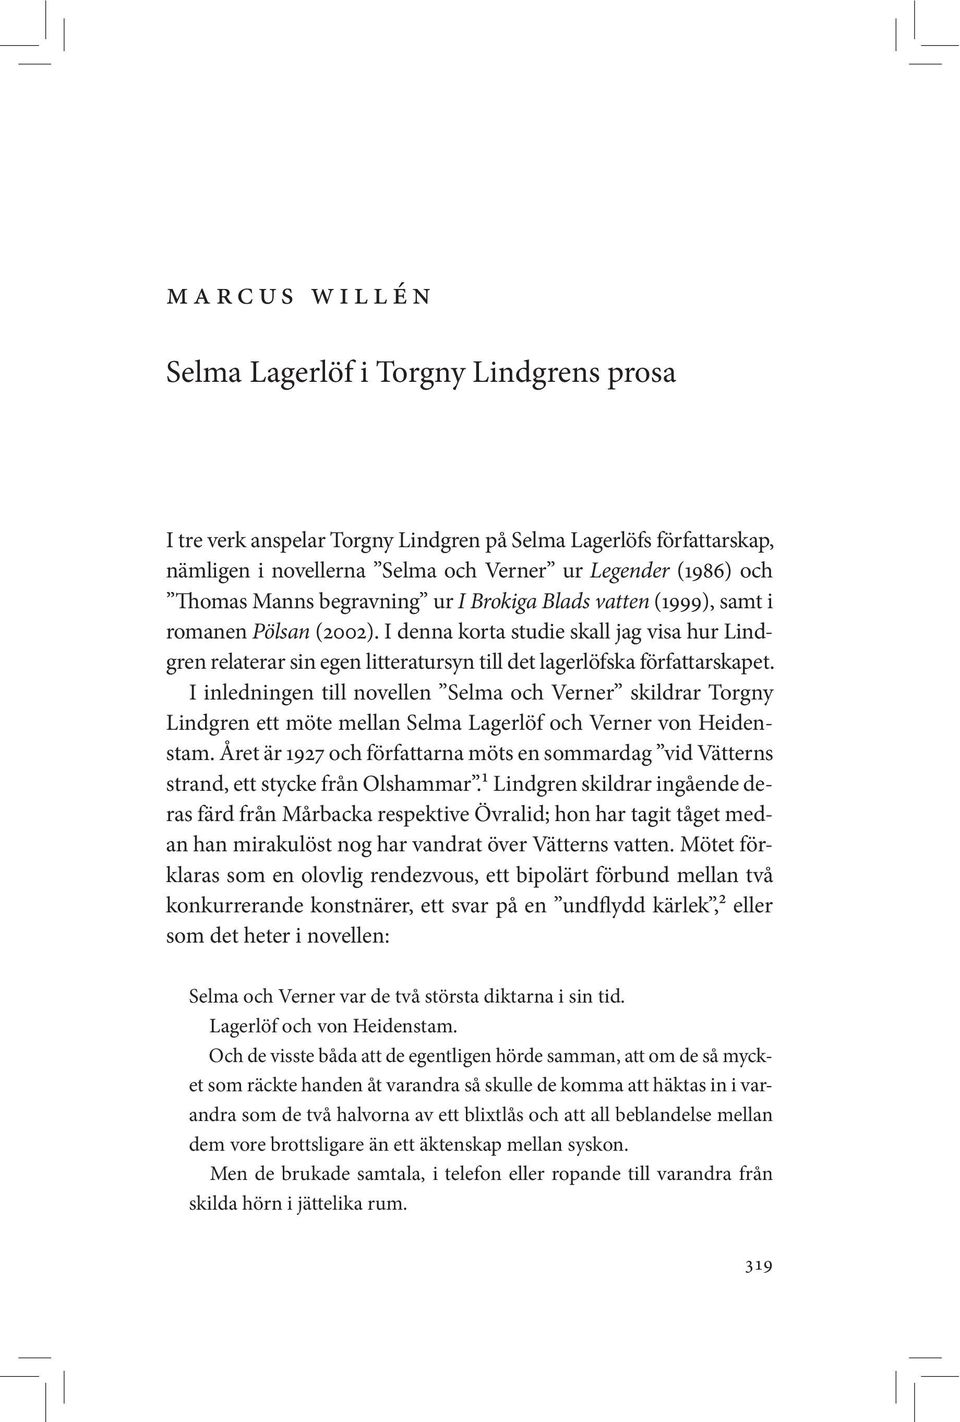 I denna korta studie skall jag visa hur Lindgren relaterar sin egen litteratursyn till det lagerlöfska författarskapet.